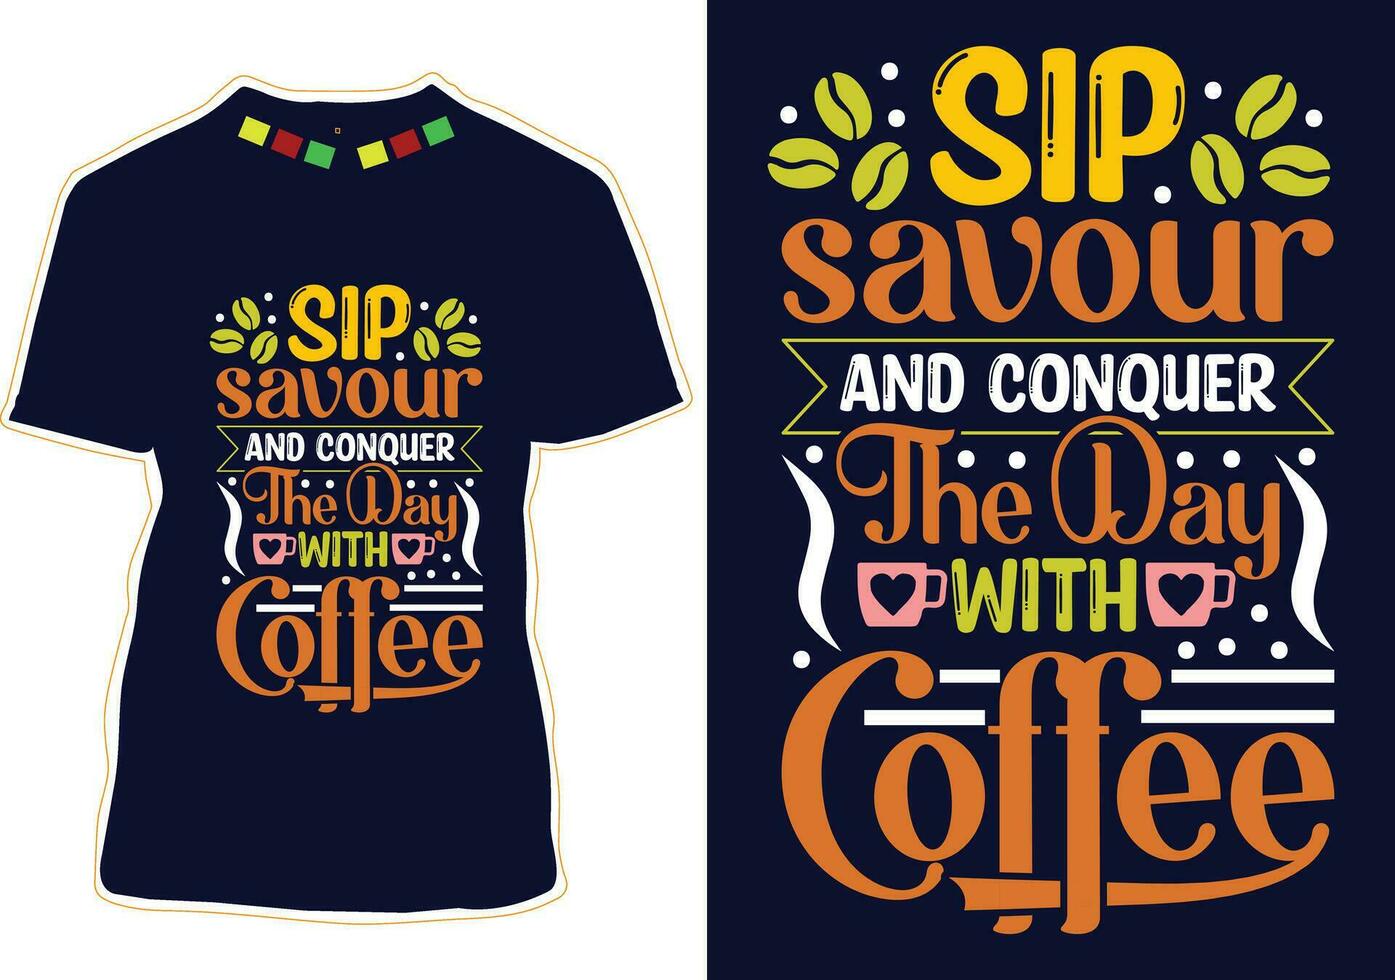 smutta njuta av och erövra de dag med kaffe, internationell kaffe dag t-shirt design vektor